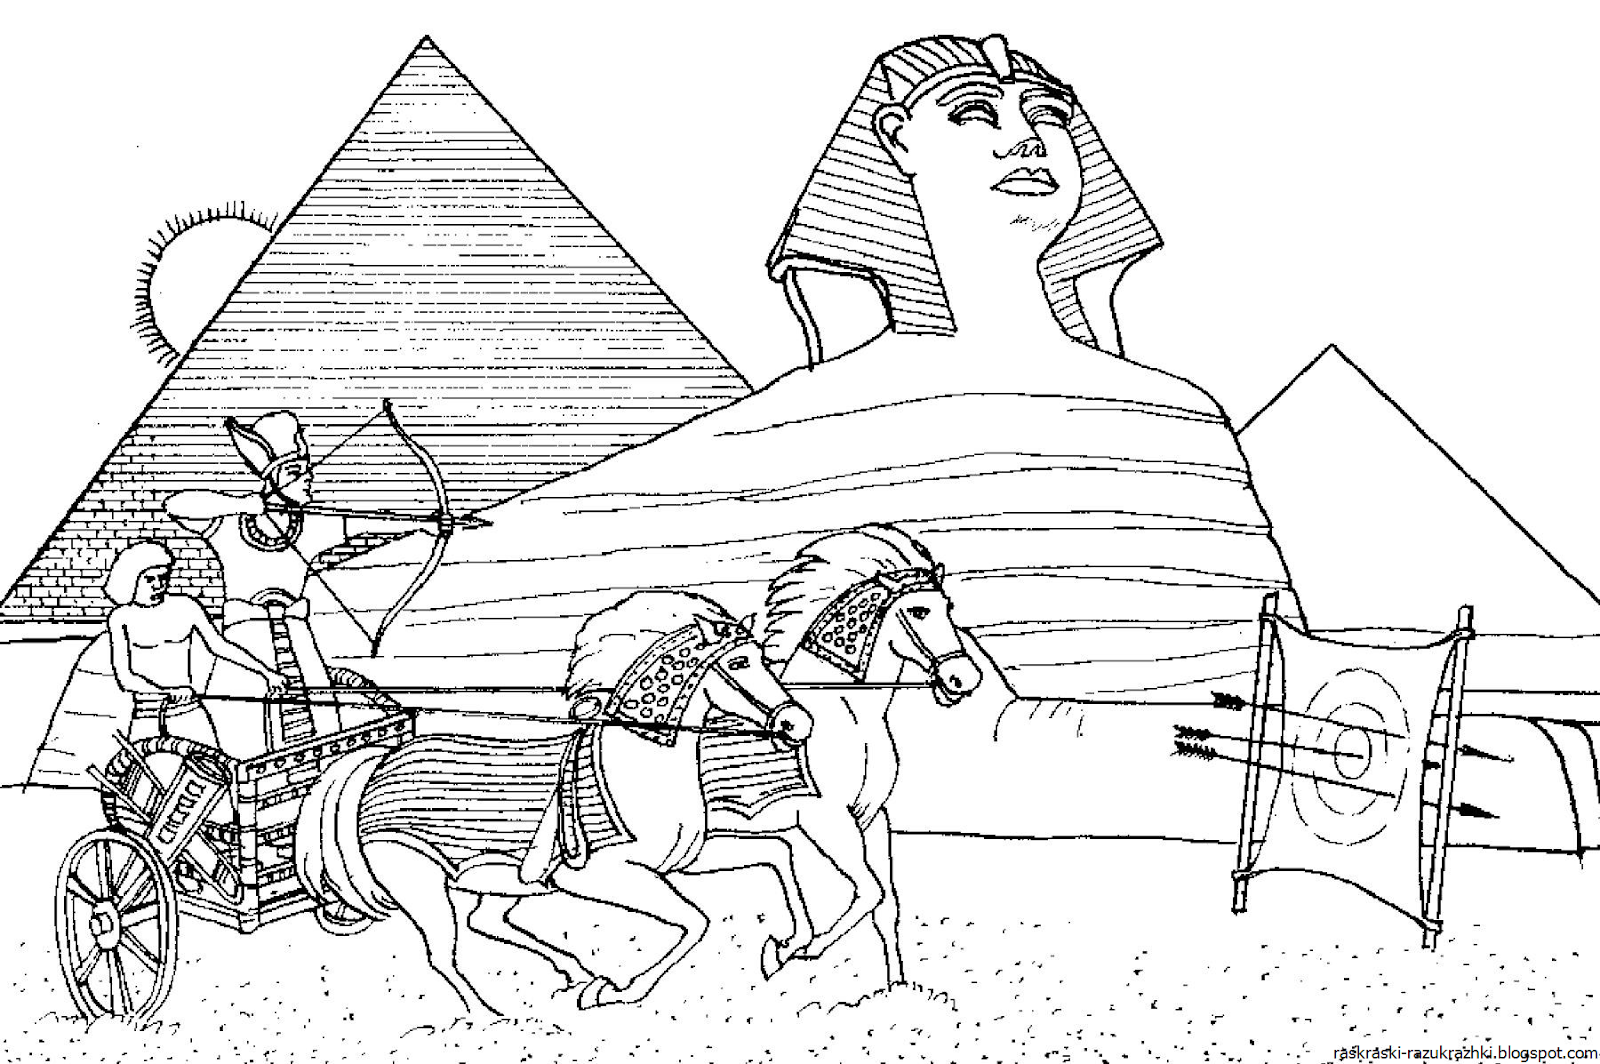 История 7 класс рисунки. 7 Чудес света пирамида Хеопса рисунок. Пирамида Хеопса семь чудес света раскраска для детей. Египетские пирамиды в древнем Египте зарисовки. Чудеса света пирамида Хеопса раскраска.